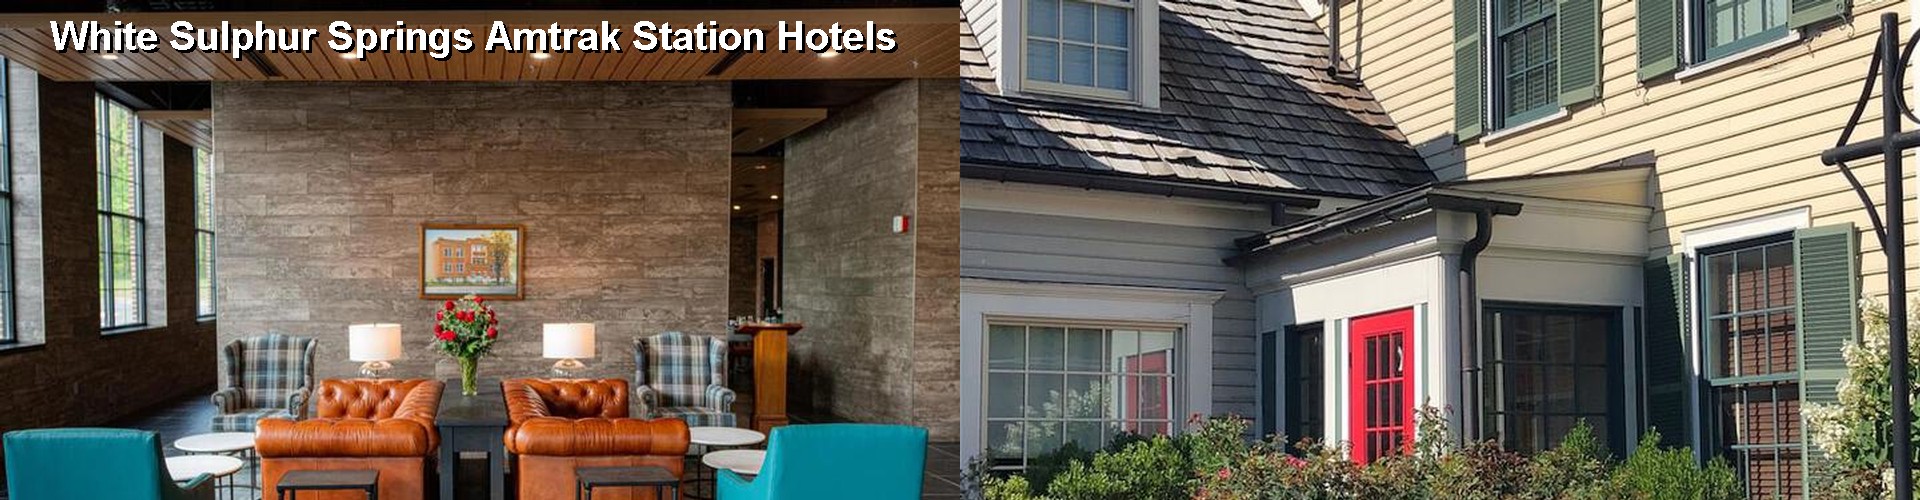 3 Best Hotels near White Sulphur Springs Amtrak Station